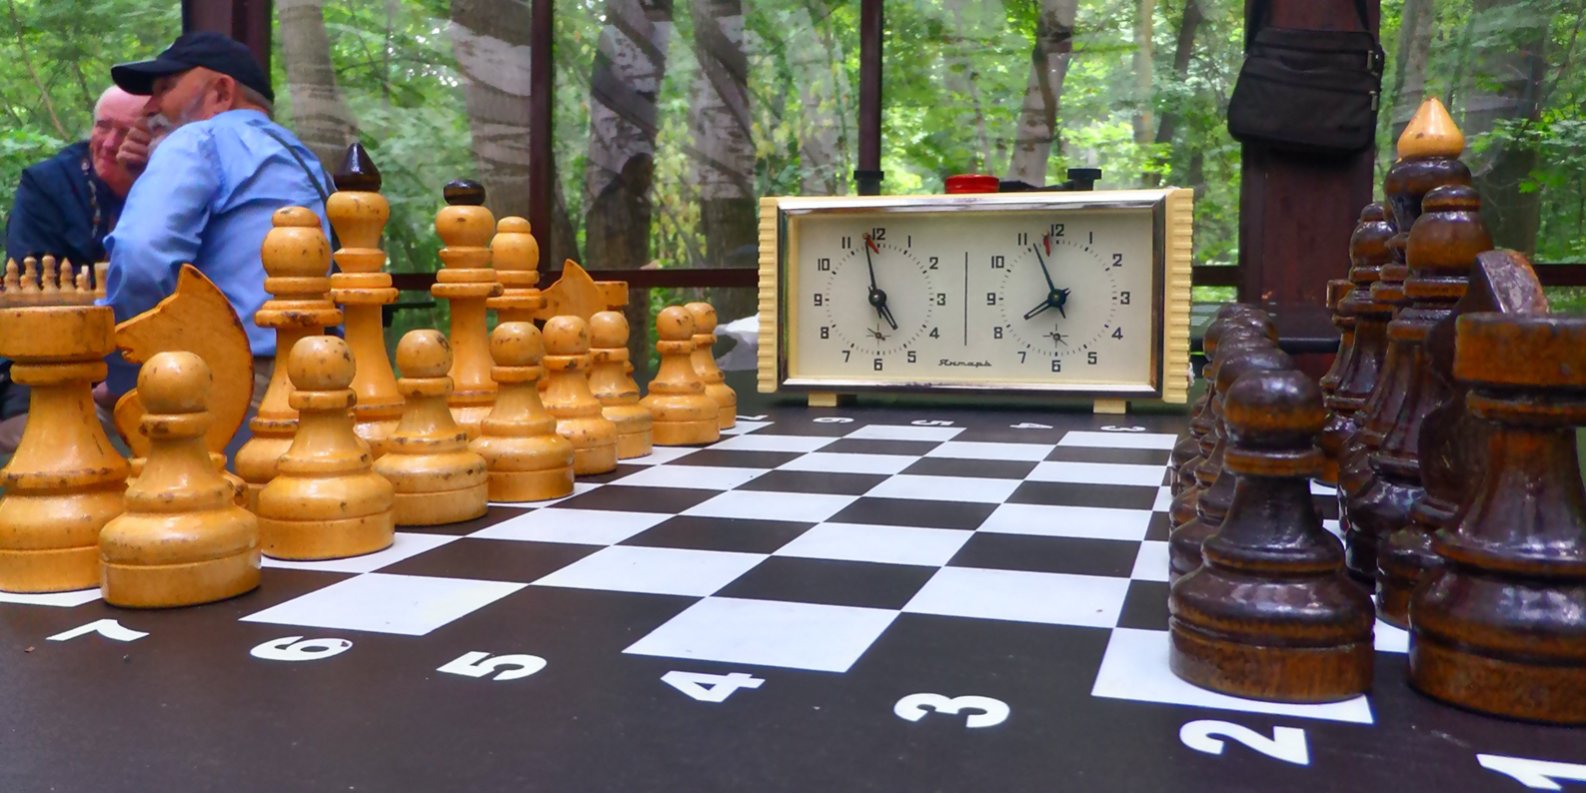  Валеология и шахматы: грани соприкосновения